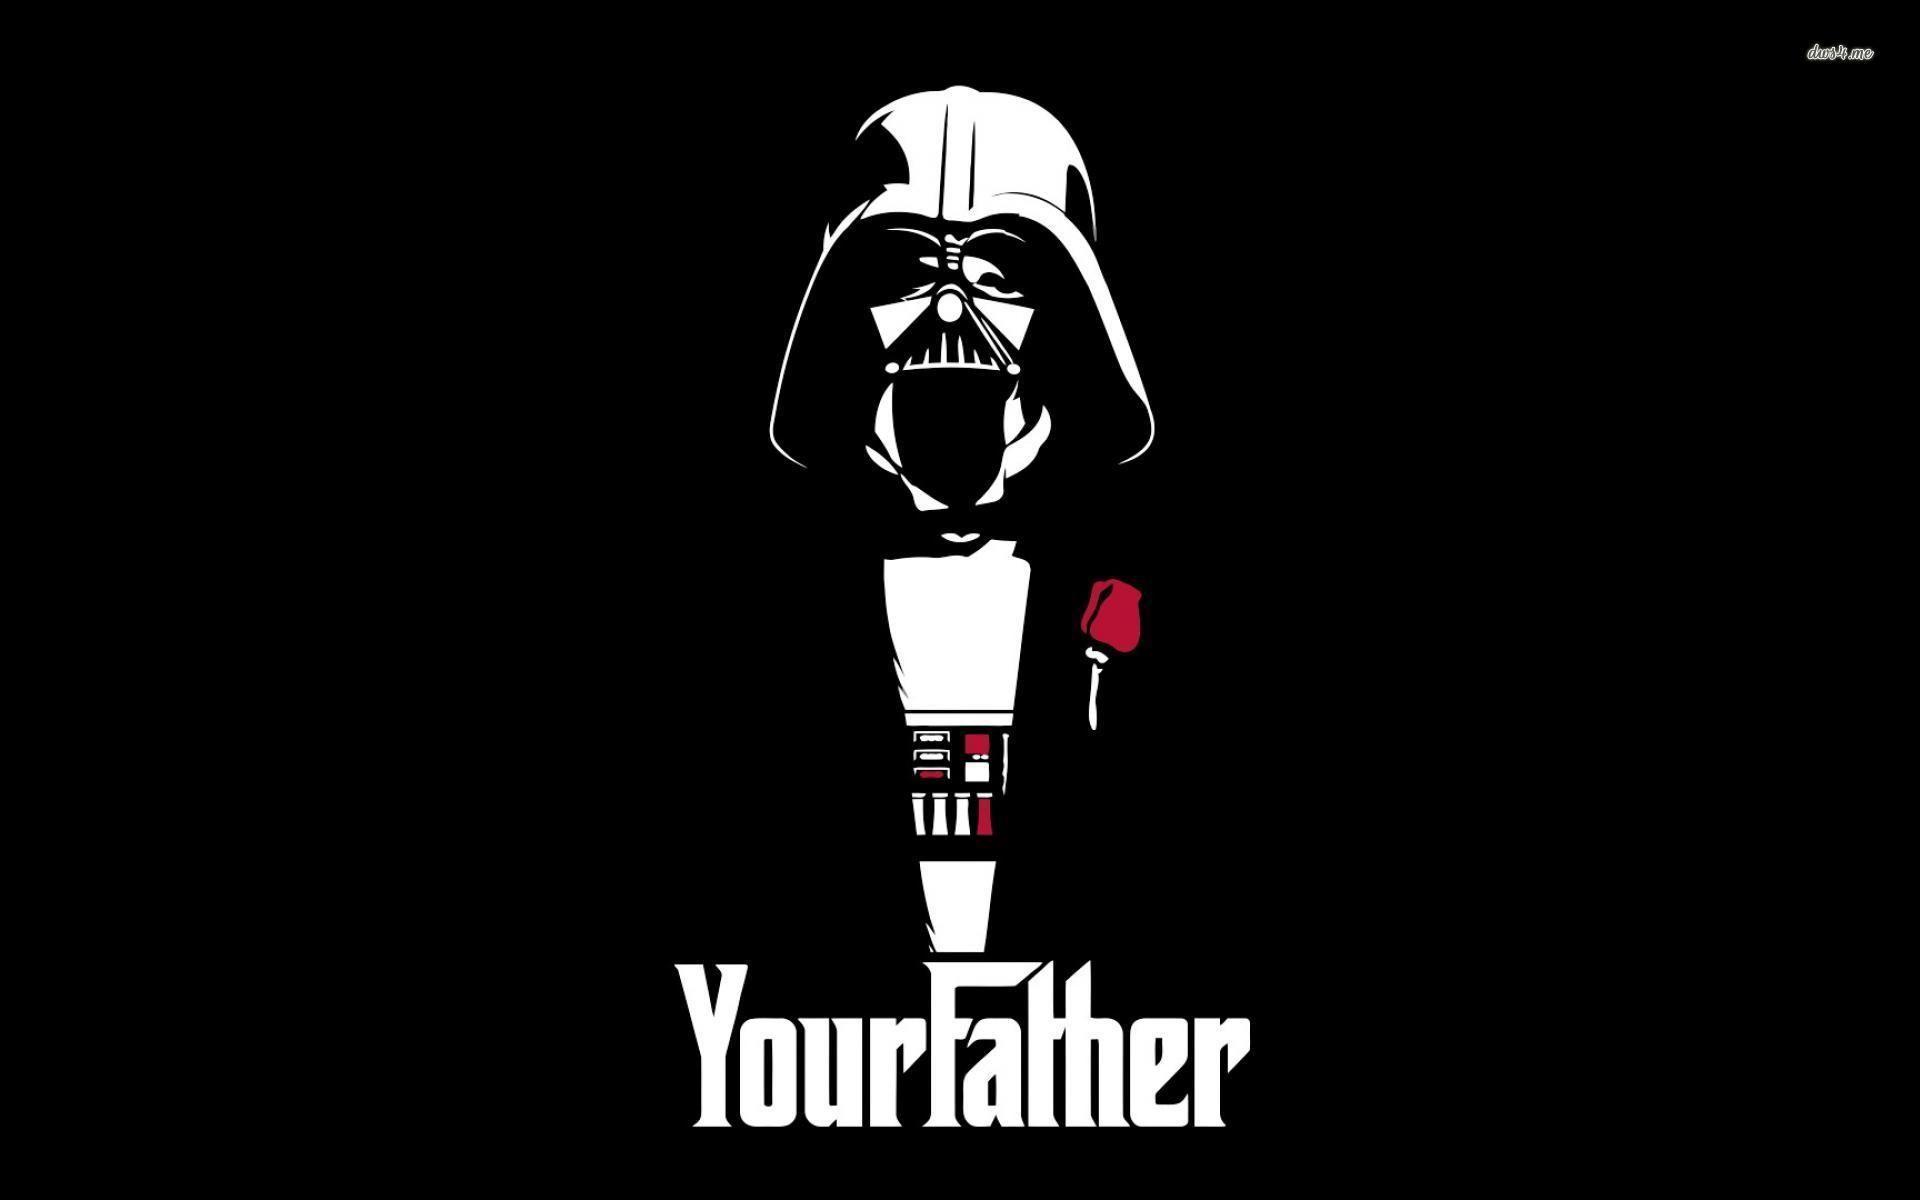 Darth Vader Godfather crossover wallpaper. STAR WARS